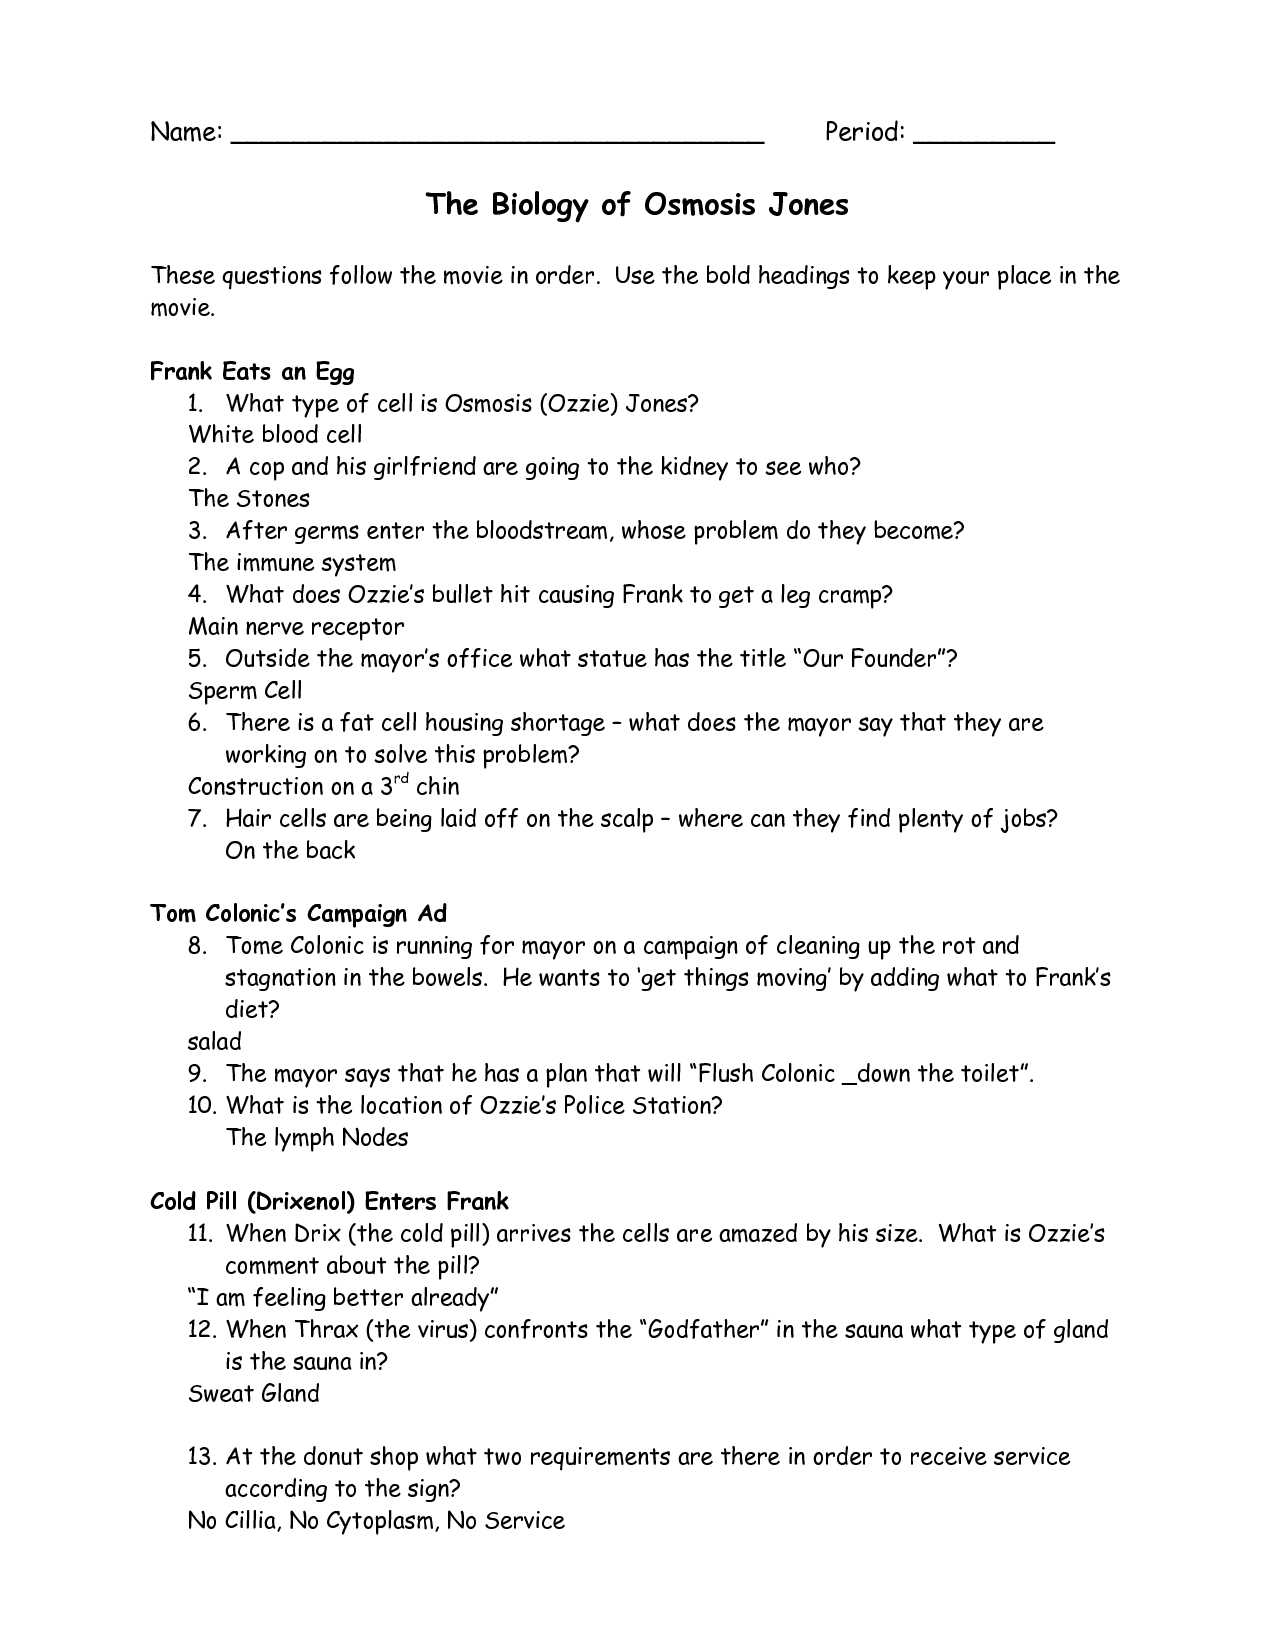 Osmosis Jones Video Worksheet or Osmosis Jones Worksheet Answers Quizlet